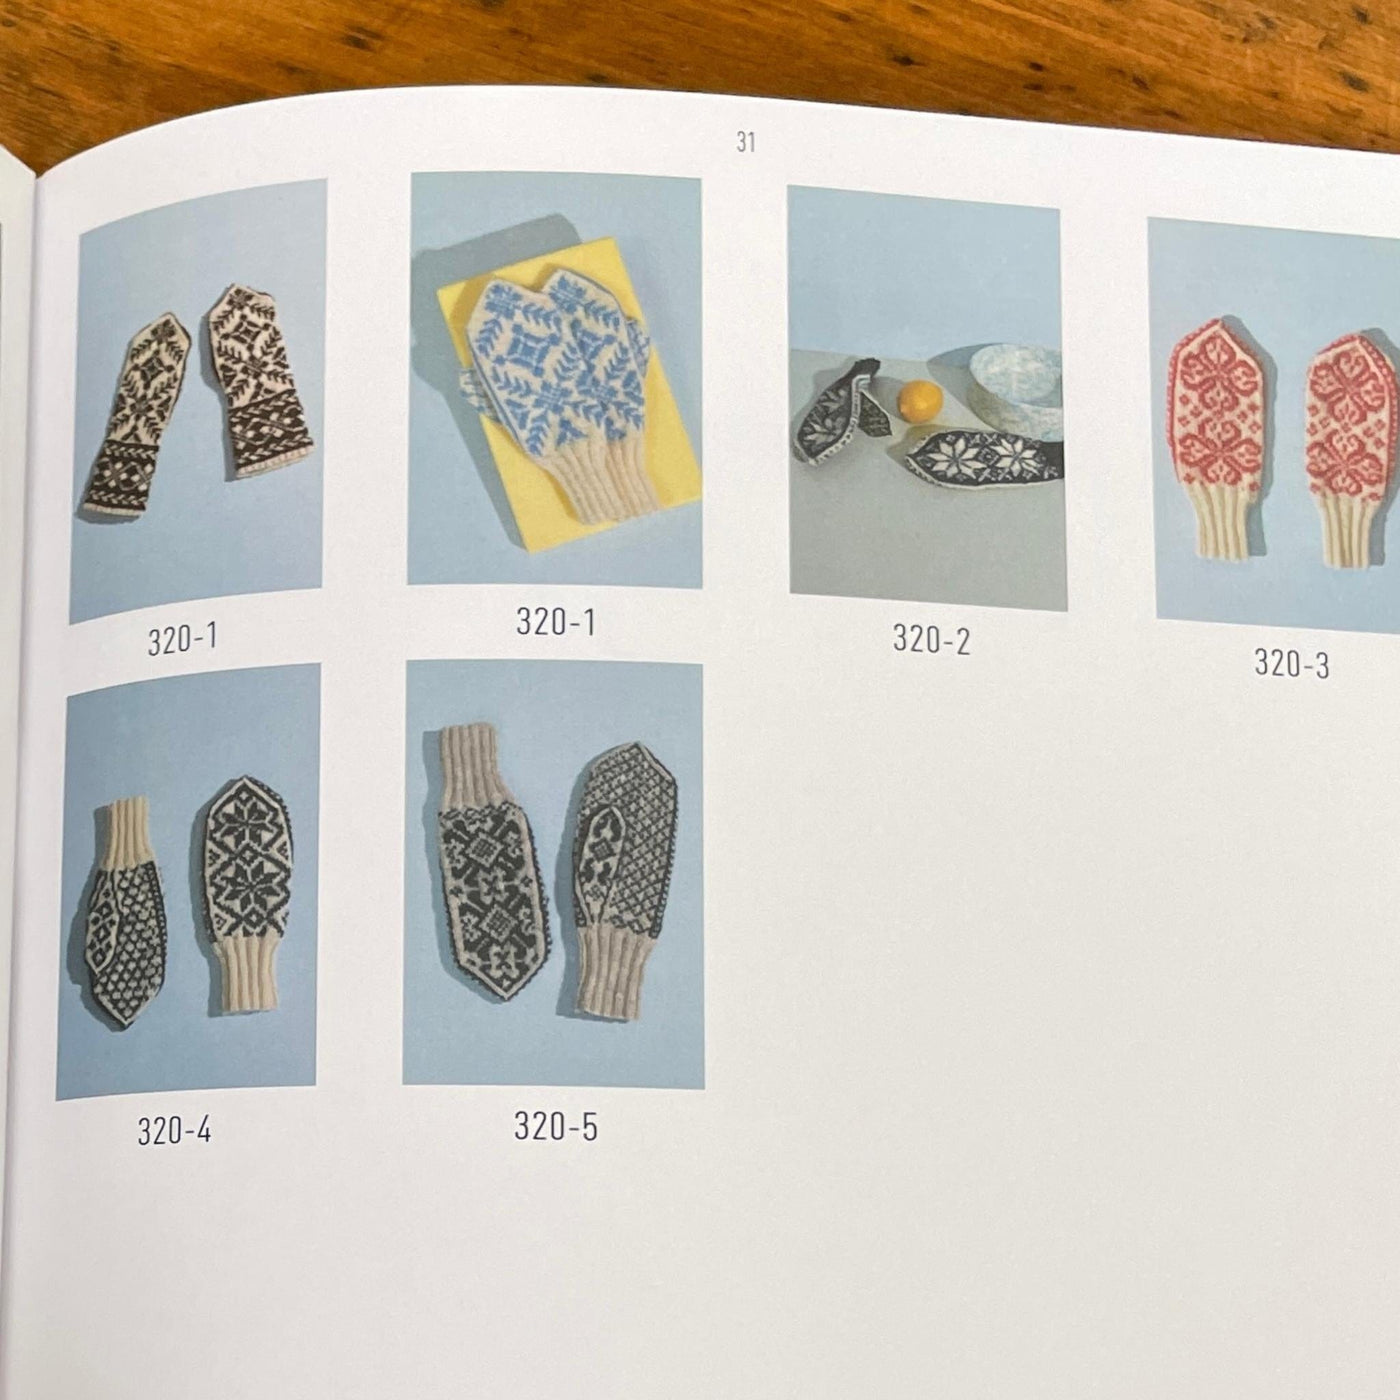 Rauma Mittens Kit with Pattern Book